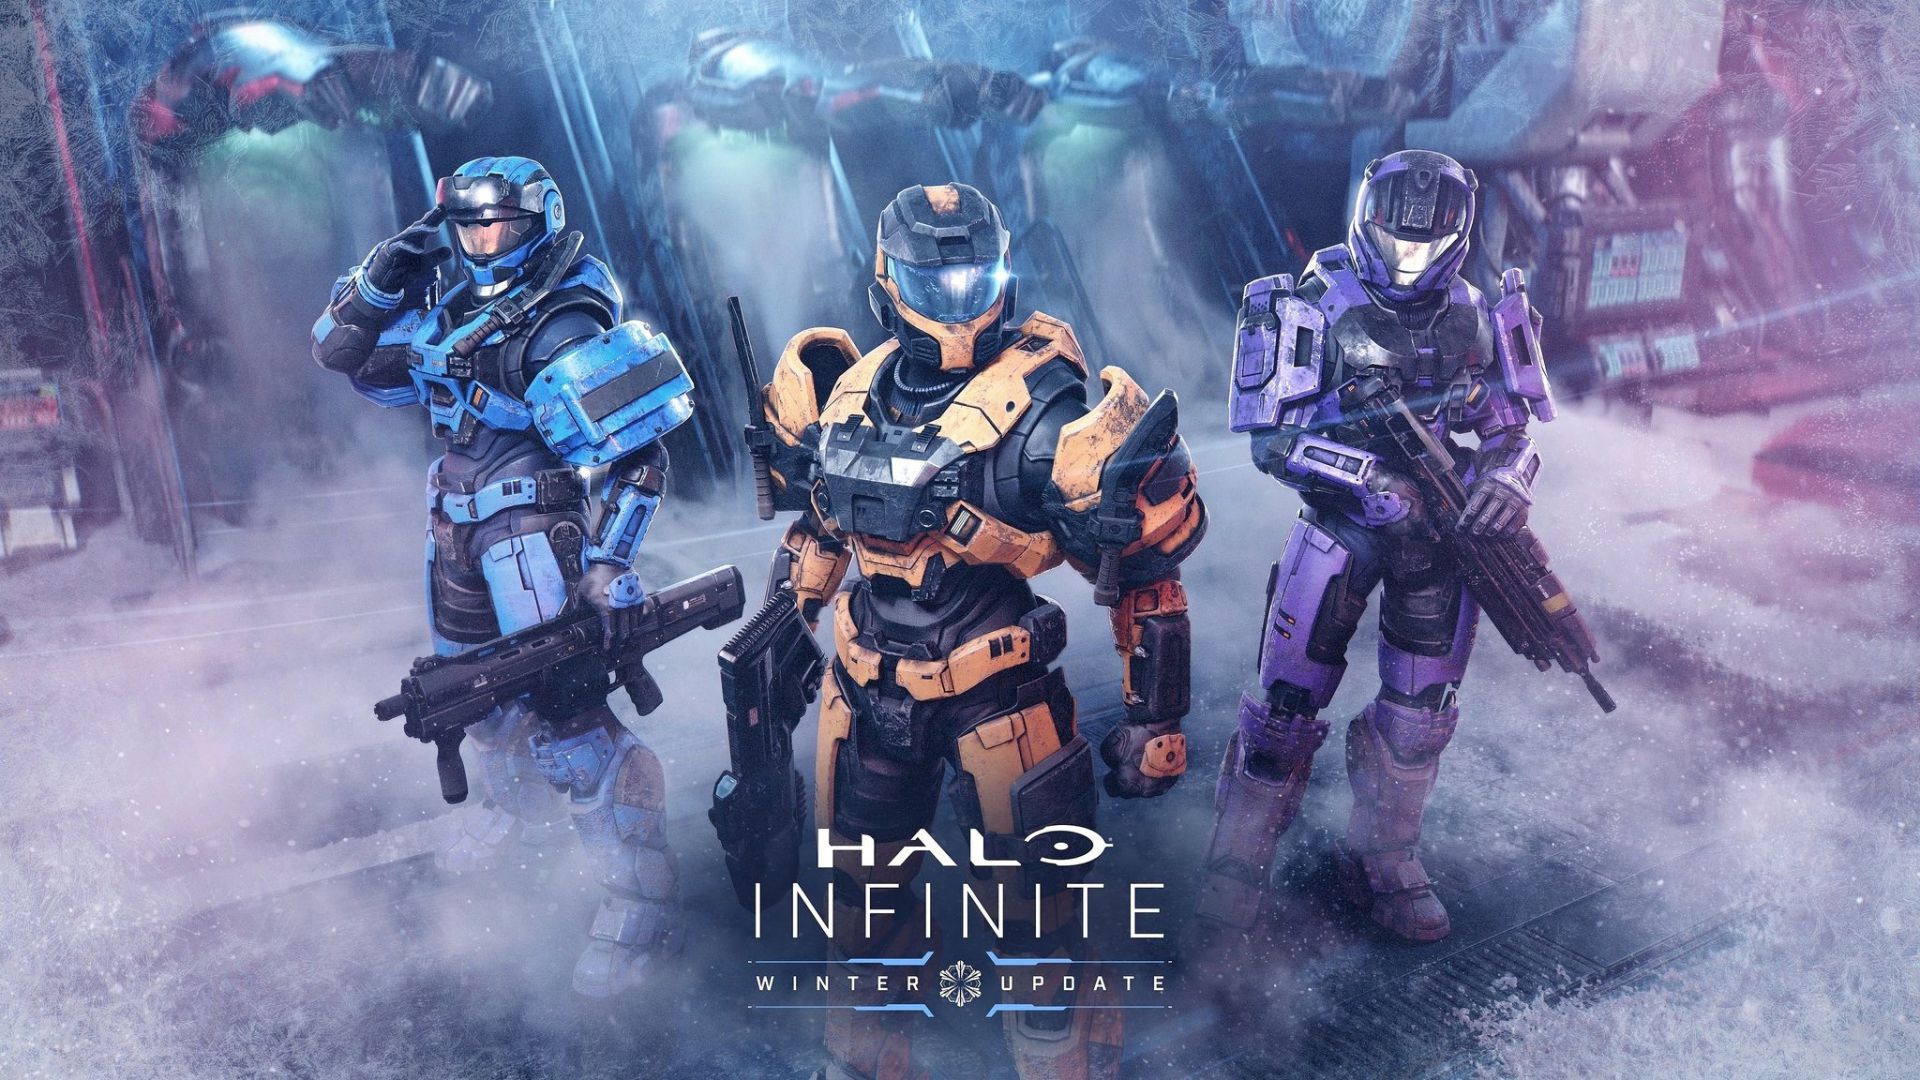 Halo Infinite winter update